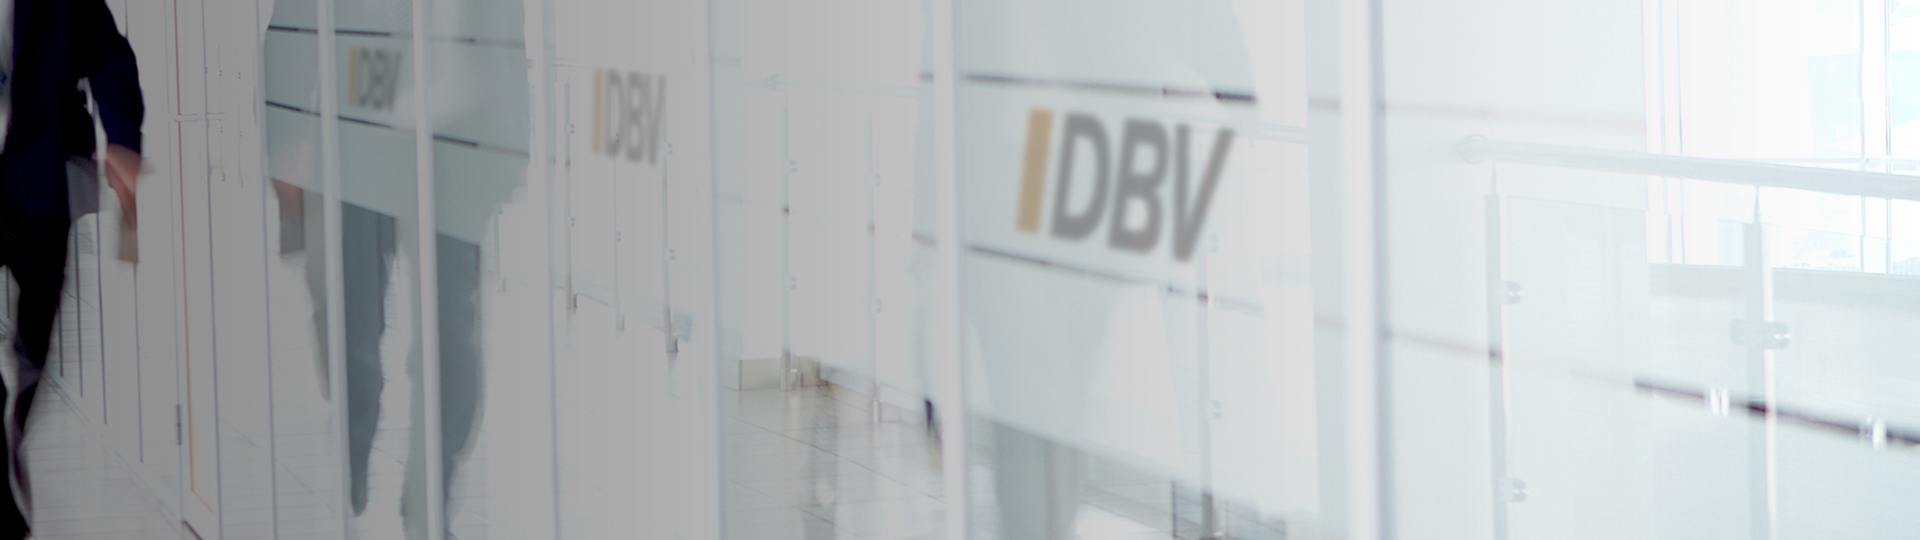 DBV Grünberg Zimmer oHG | Dienstunfähigkeitsversicherung 